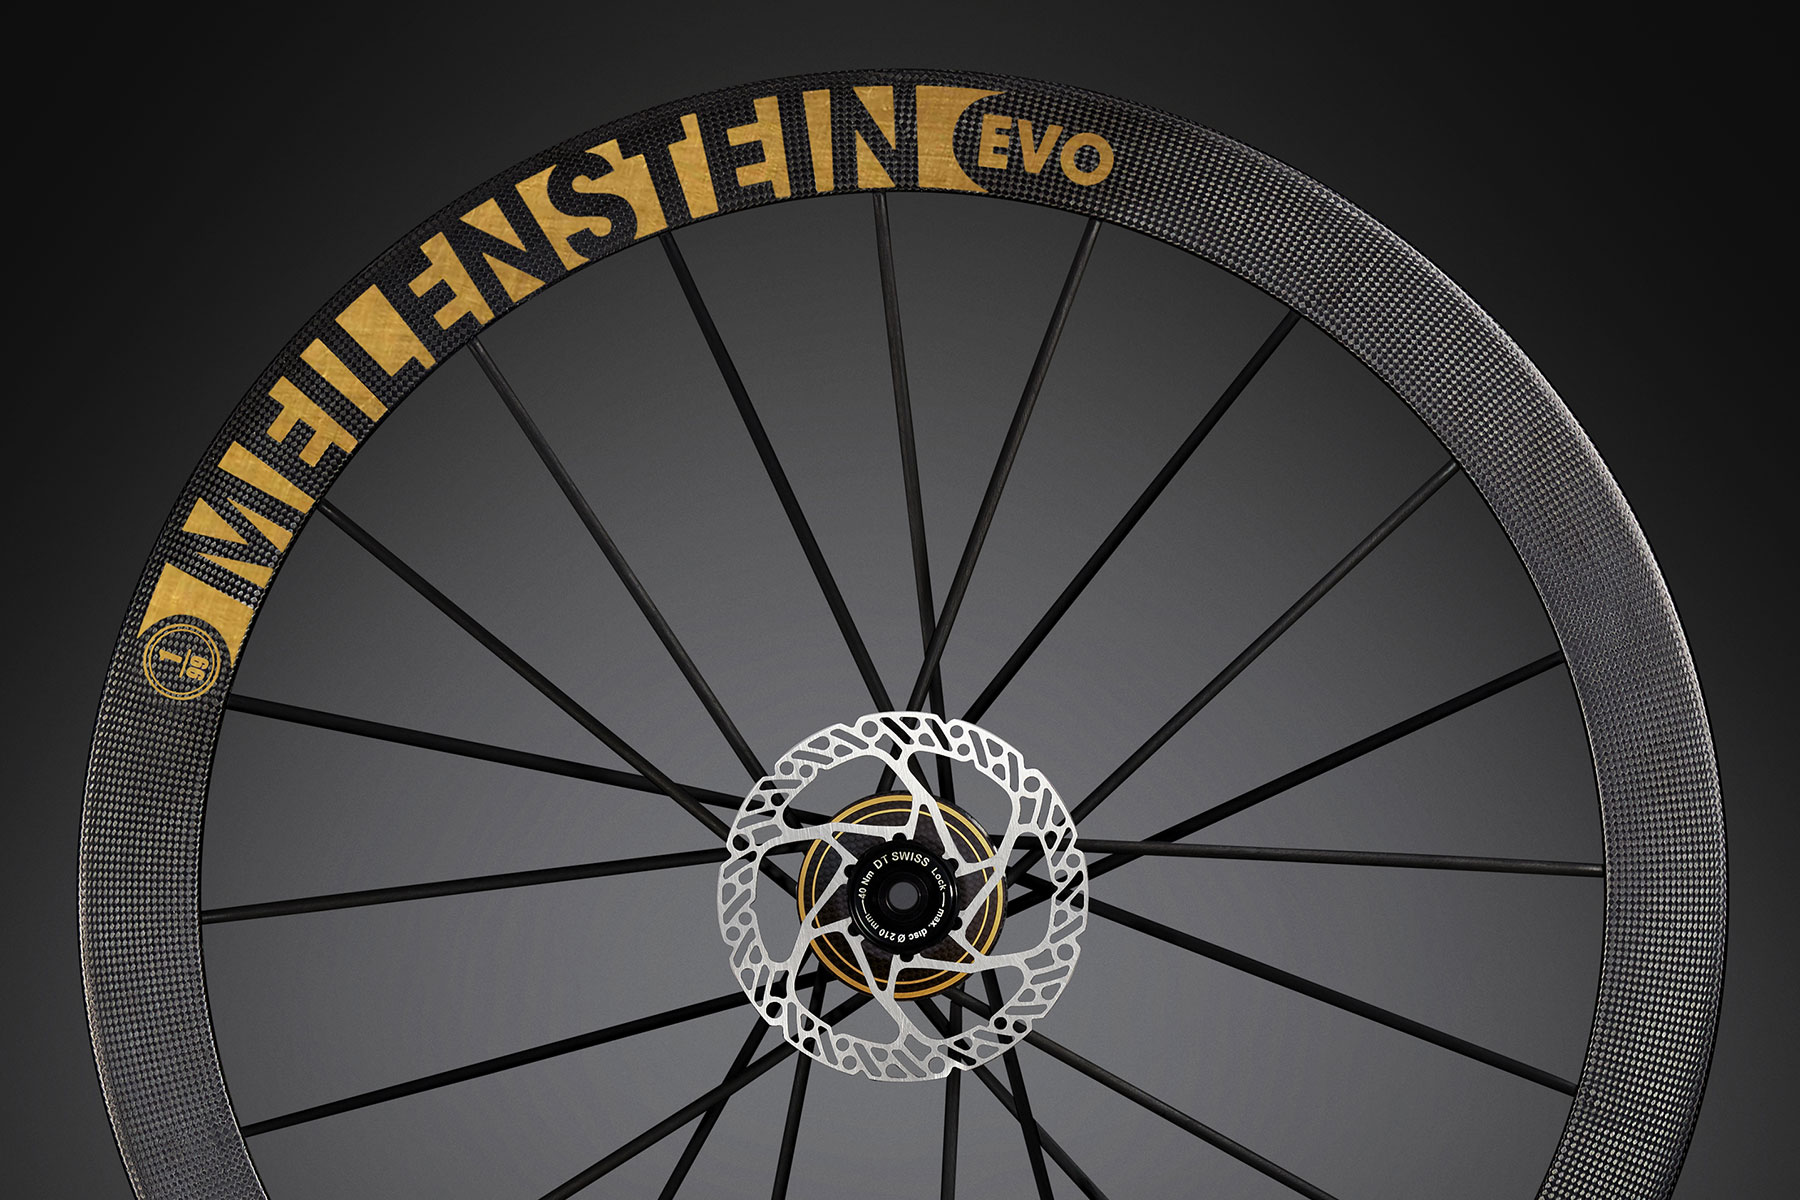 Lightweight-Meilenstein-EVO-Signature-Edition-Gold-carbon-road-wheels_23k-gold-leaf-detail.jpg